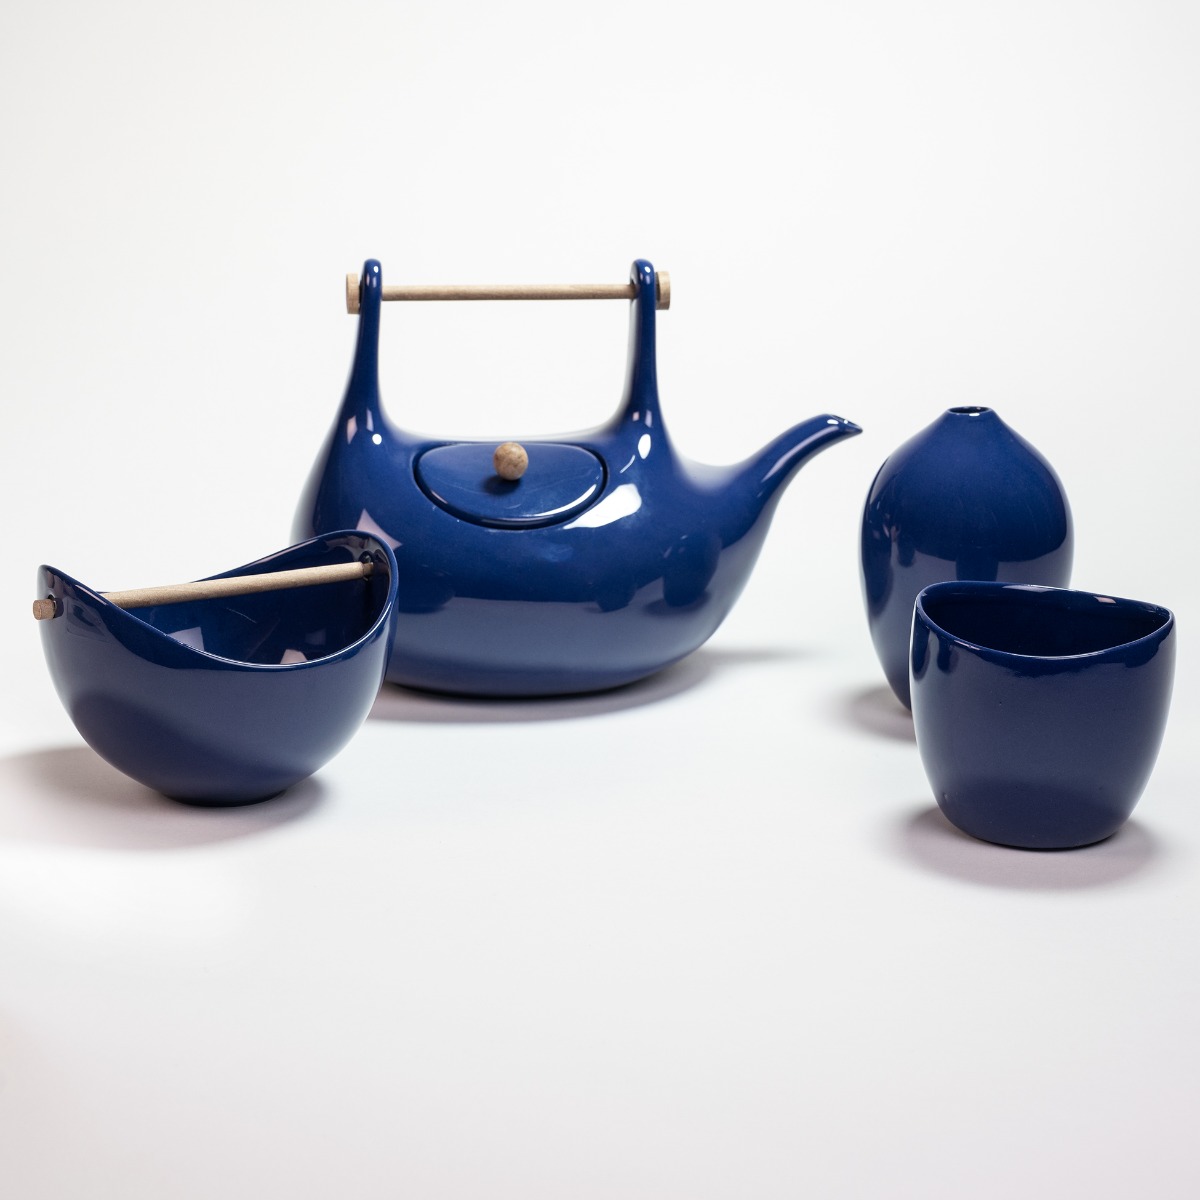 Ceramic bowl 